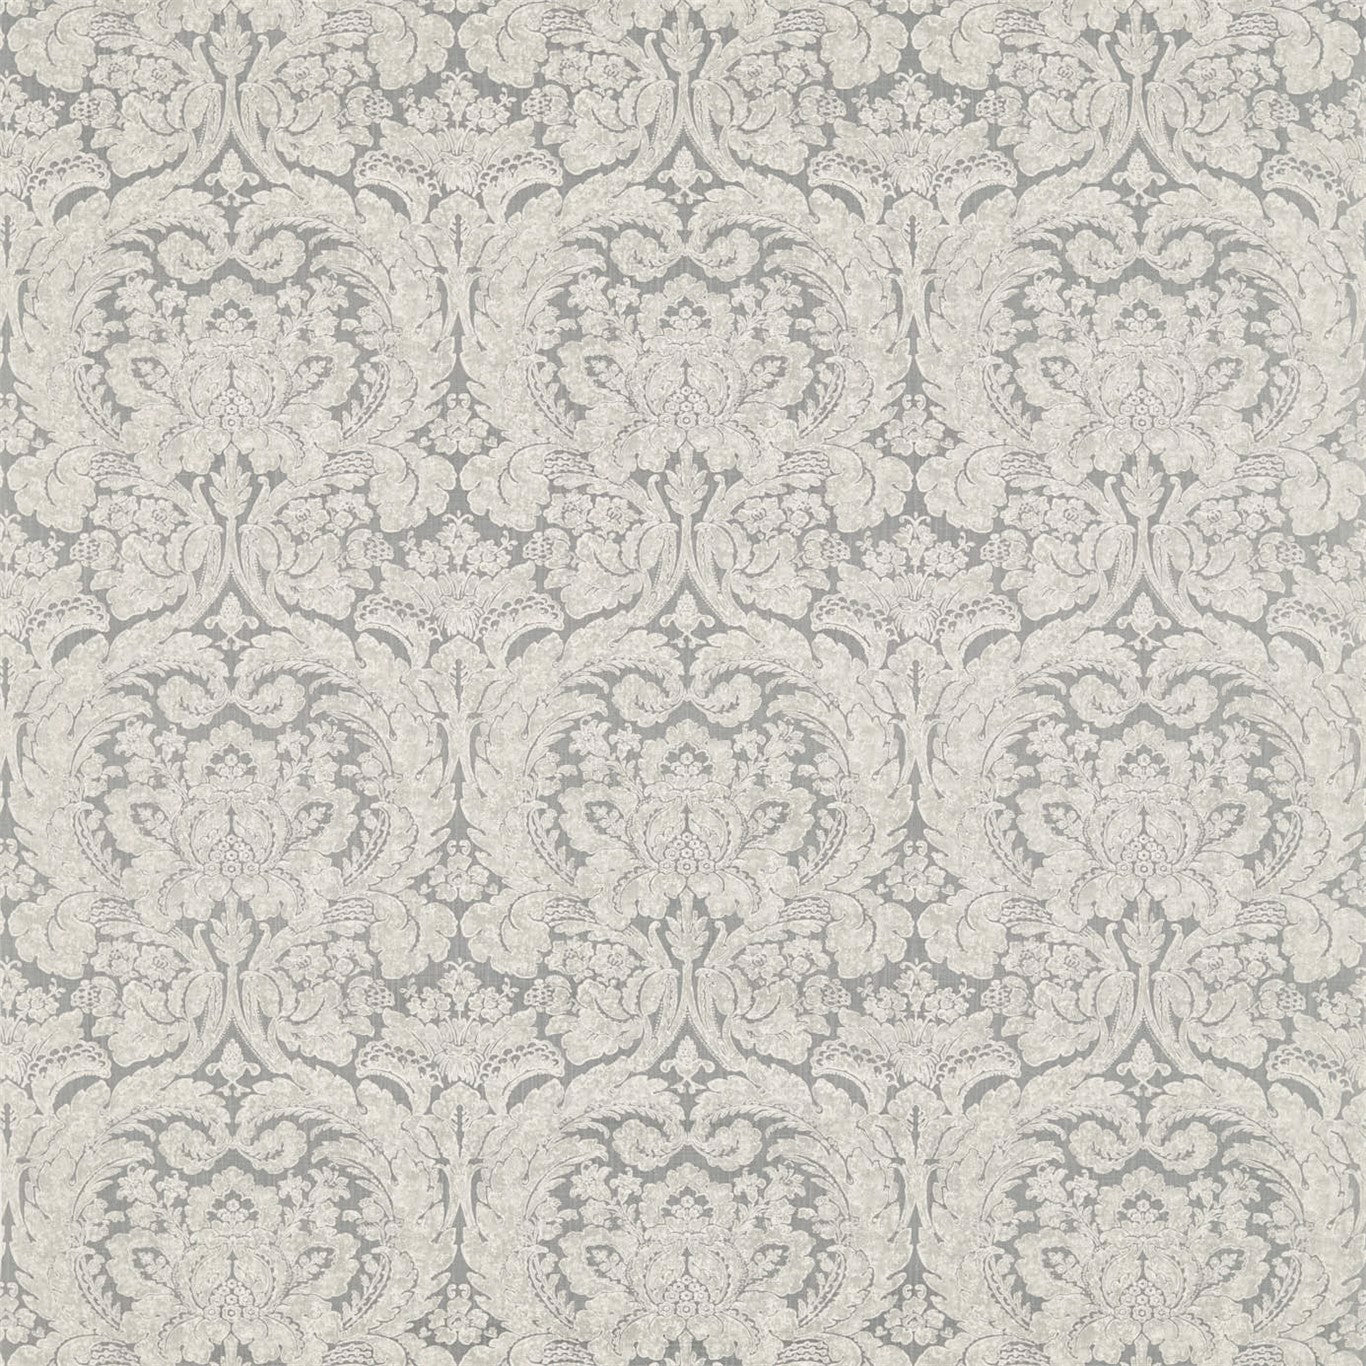 Courtney Fabric by Sanderson - DDAM226380 - Grey/Linen